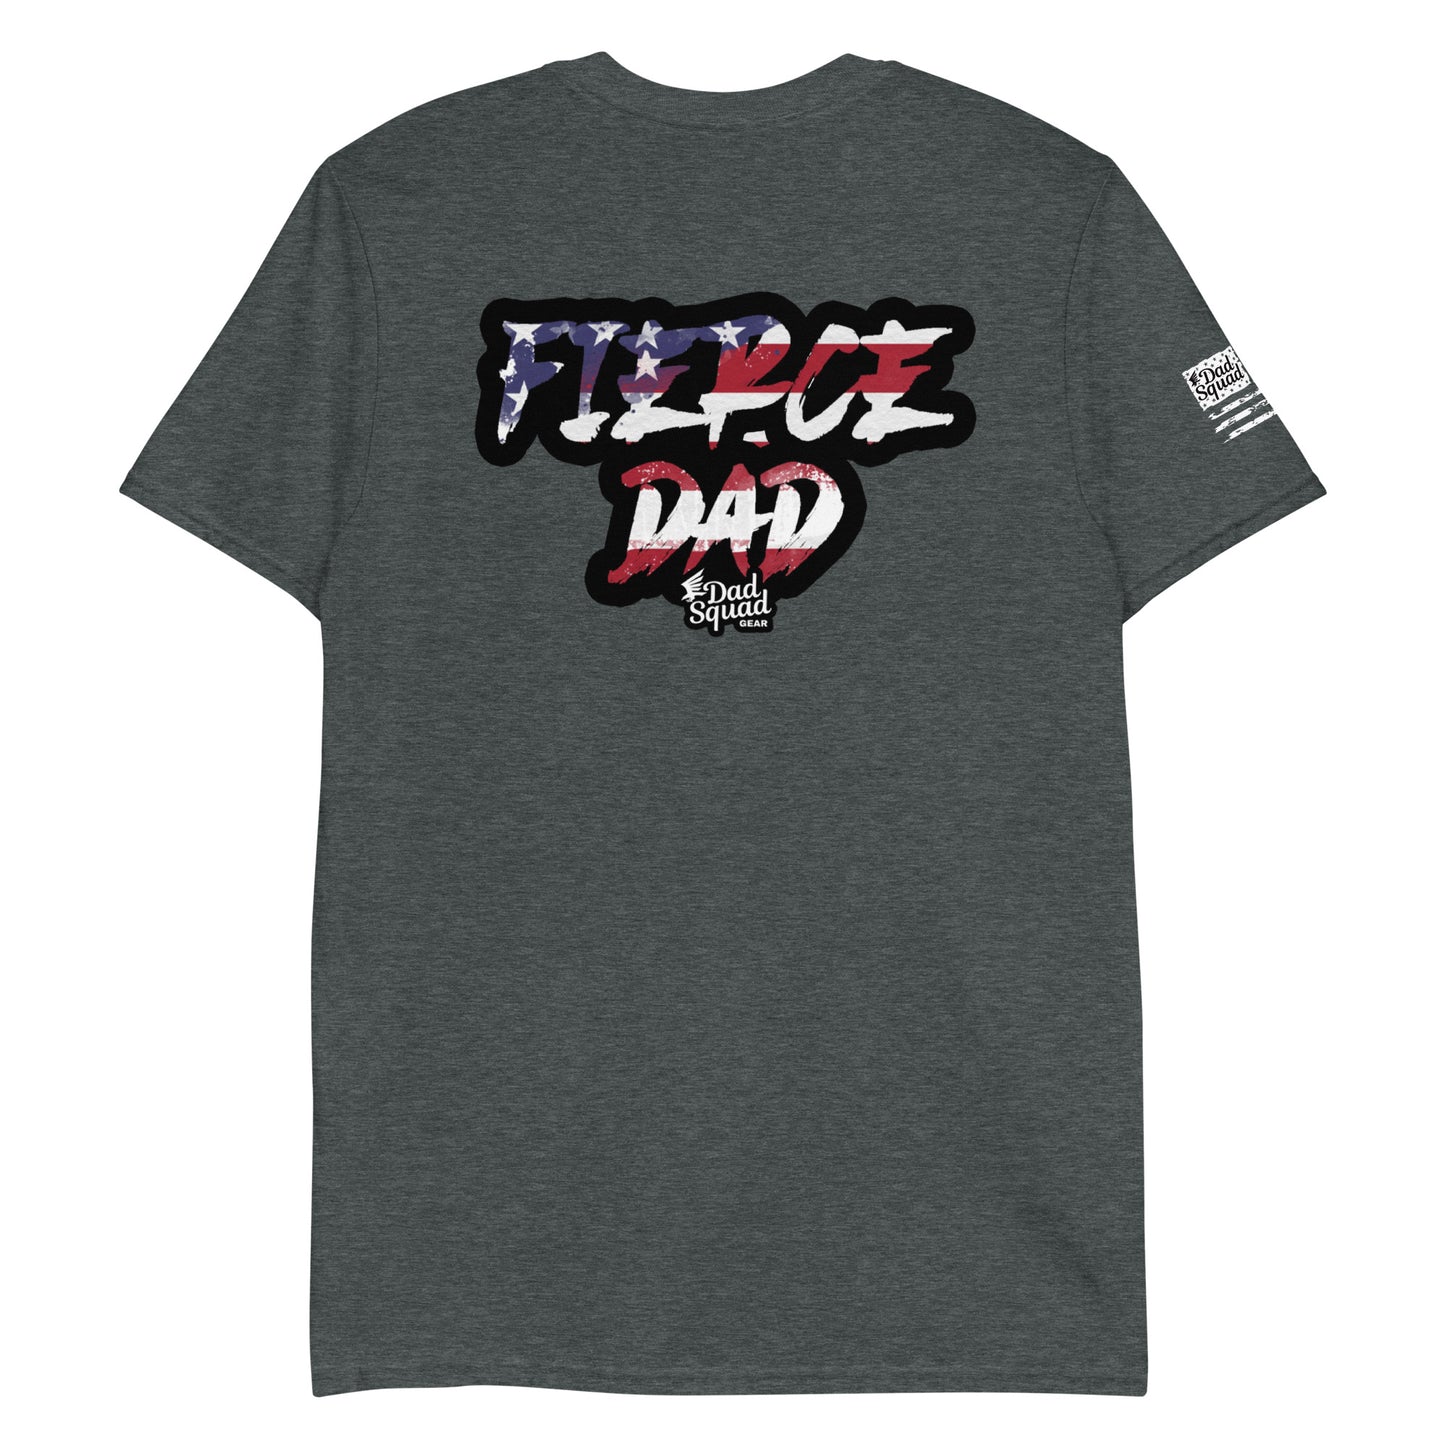 Dad Squad Short-Sleeve T-Shirt - Fierce Dad